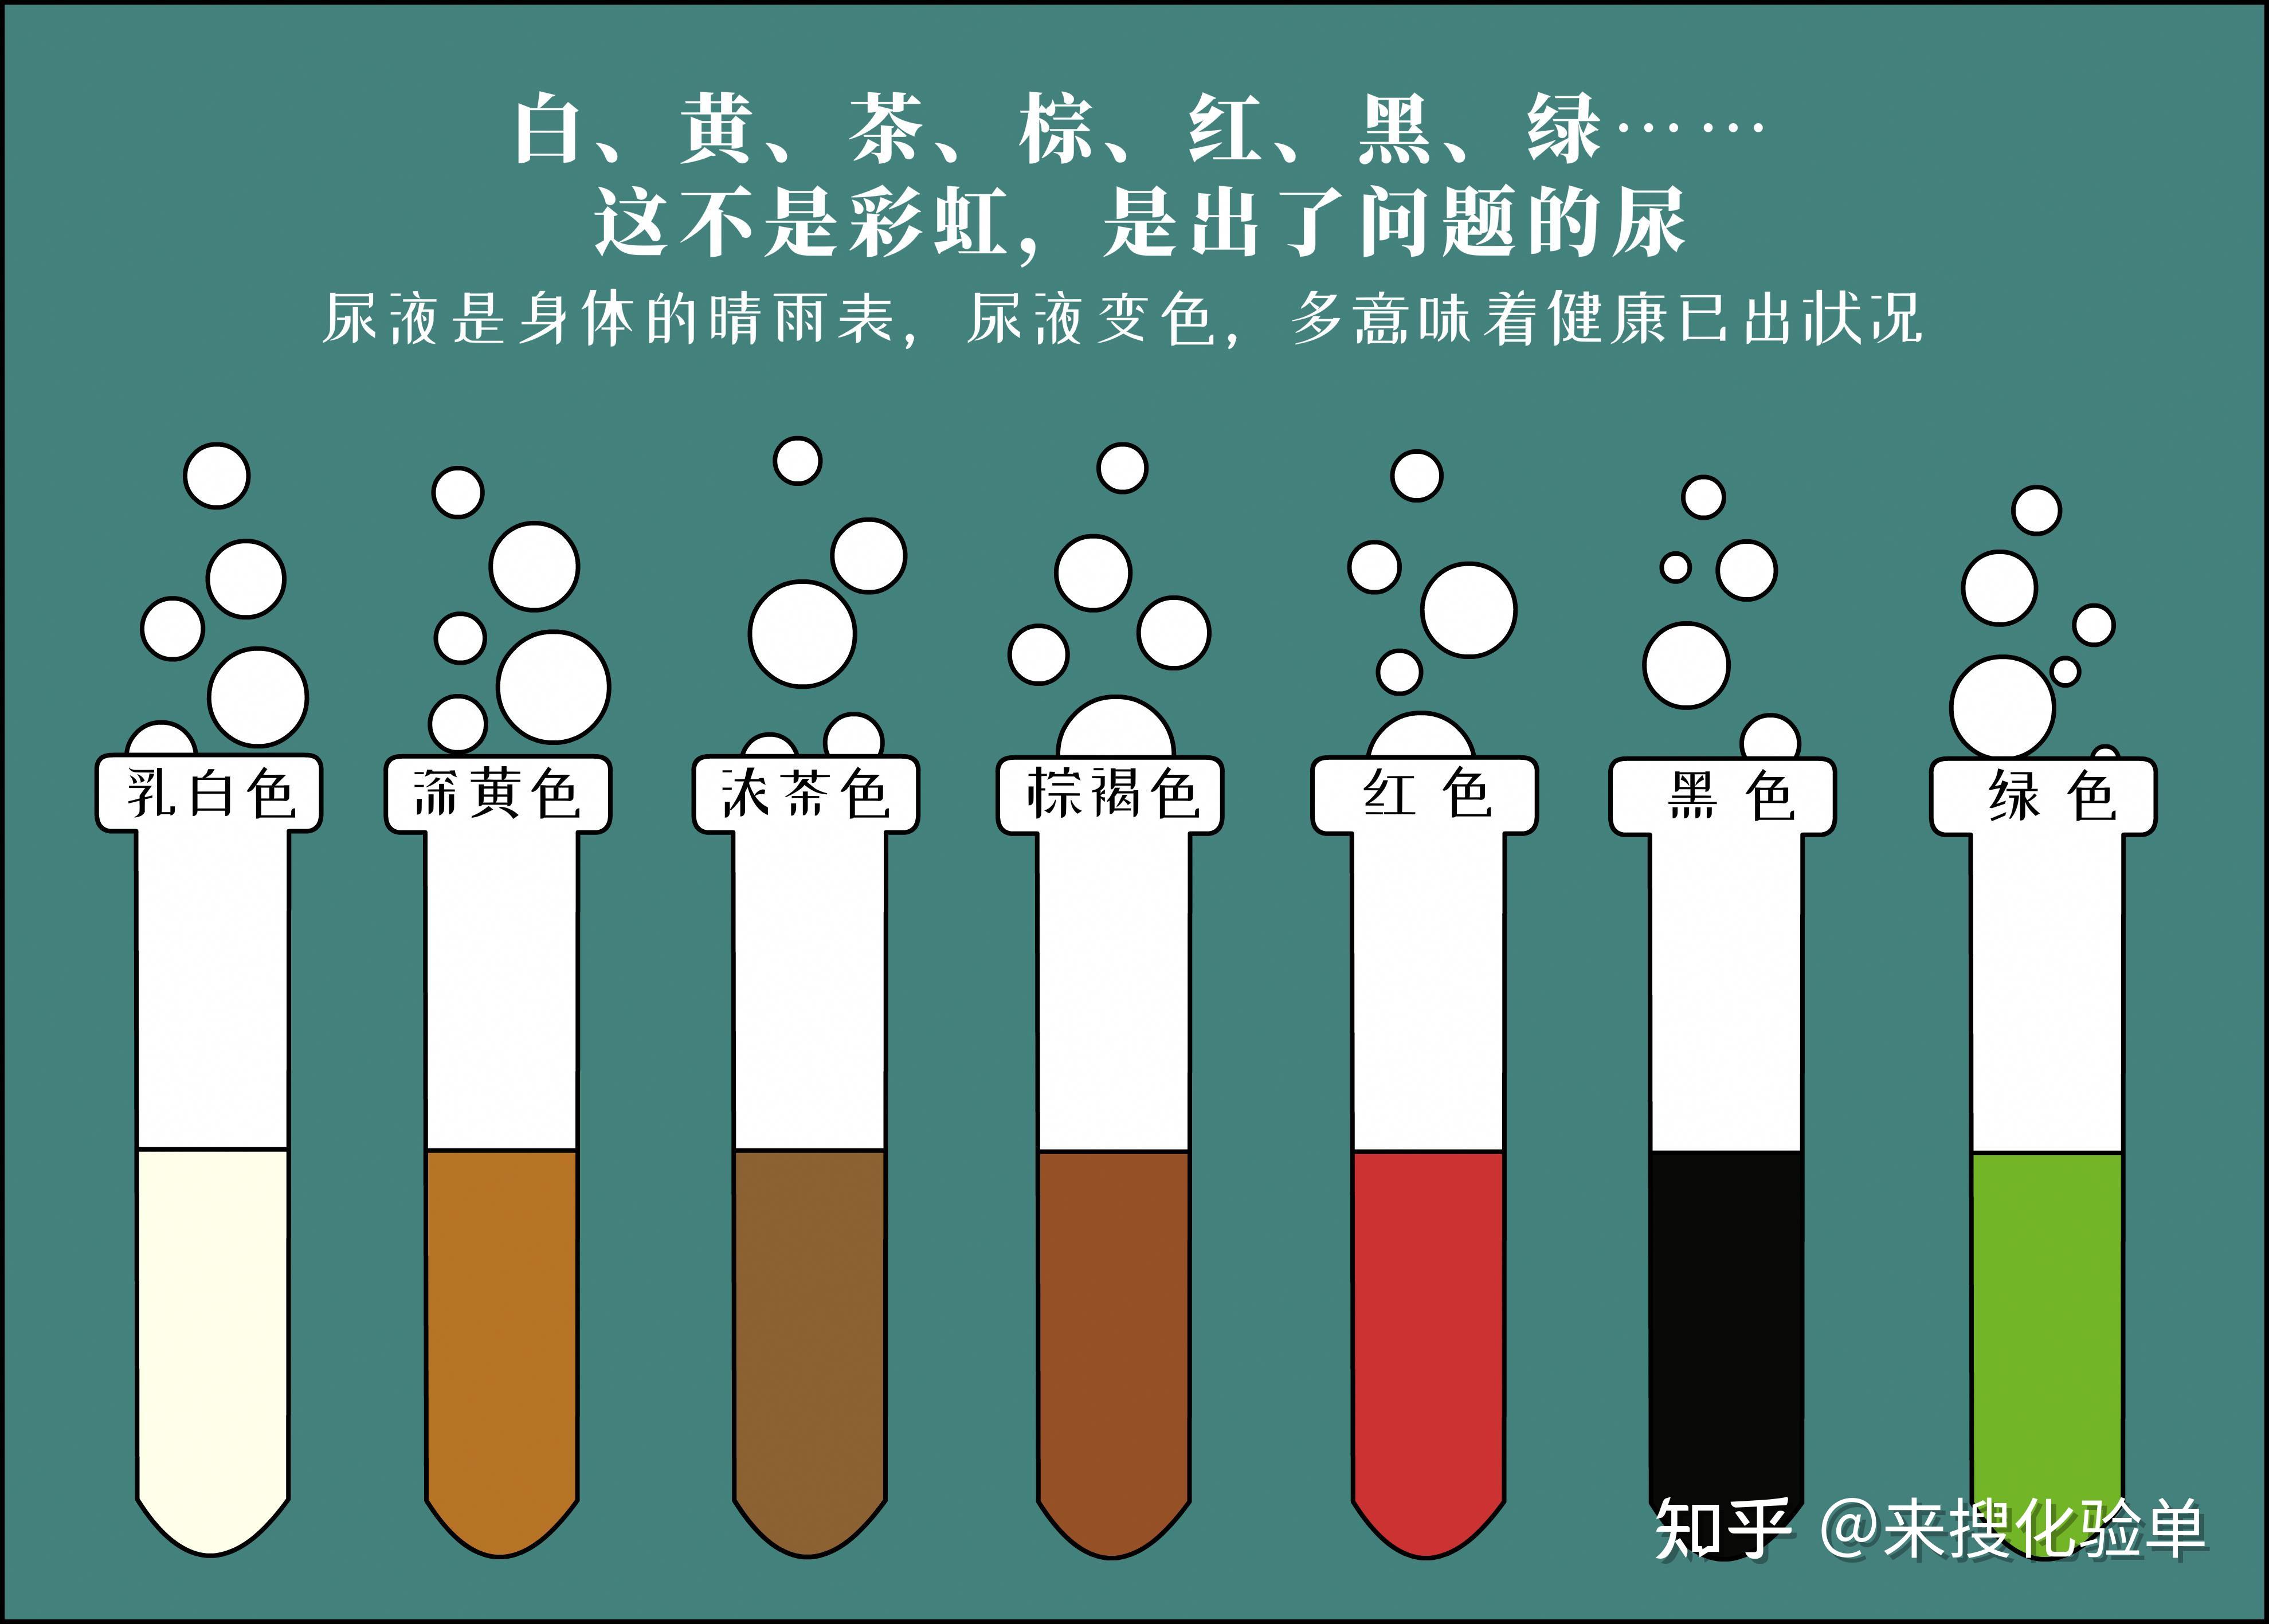 绿色:消炎药,服用亚甲蓝,靛卡红后黑色:恶性疟疾,醋中毒,黑色素瘤,尿